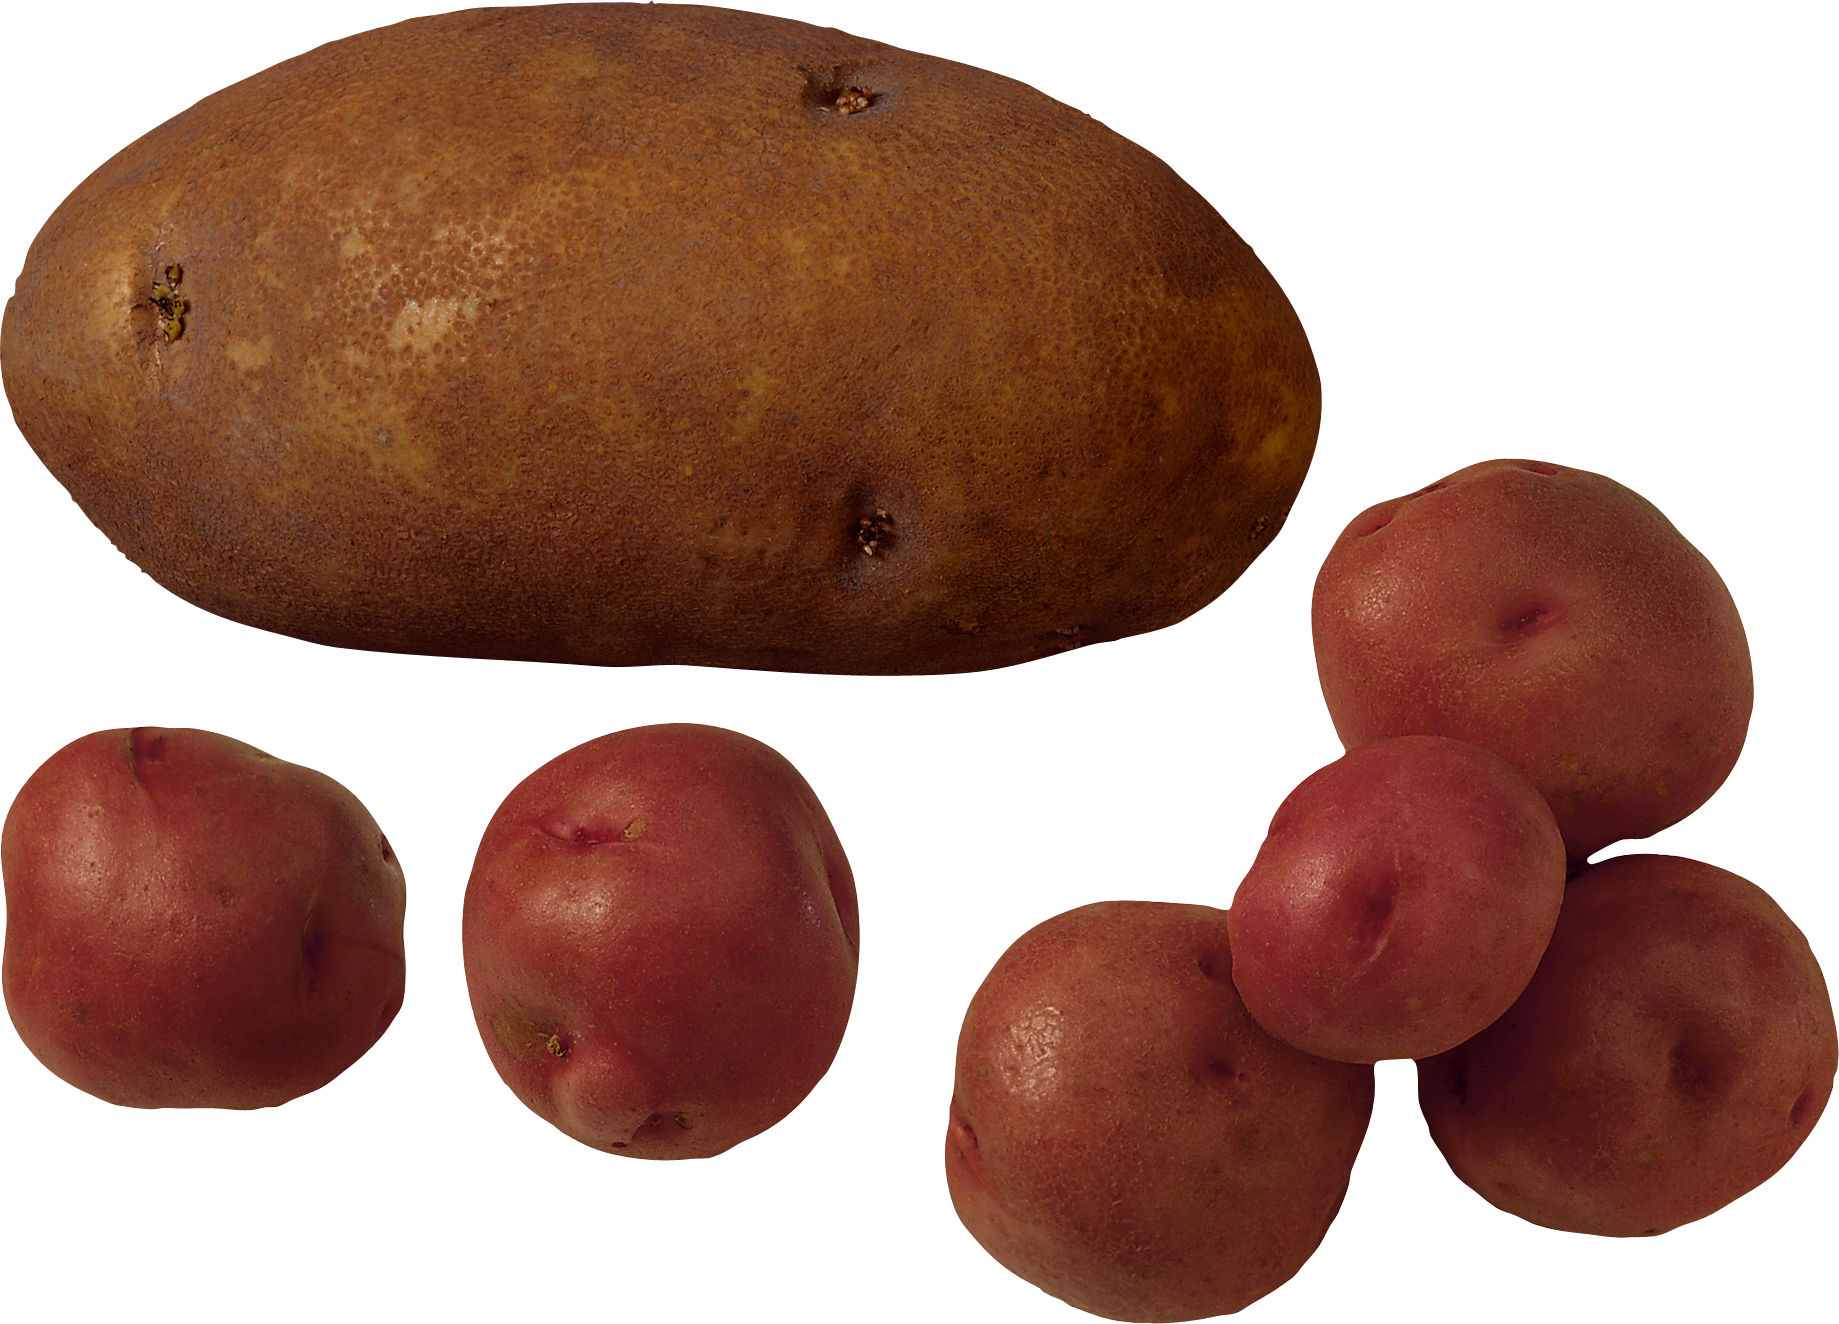 Pommes de terre rouges